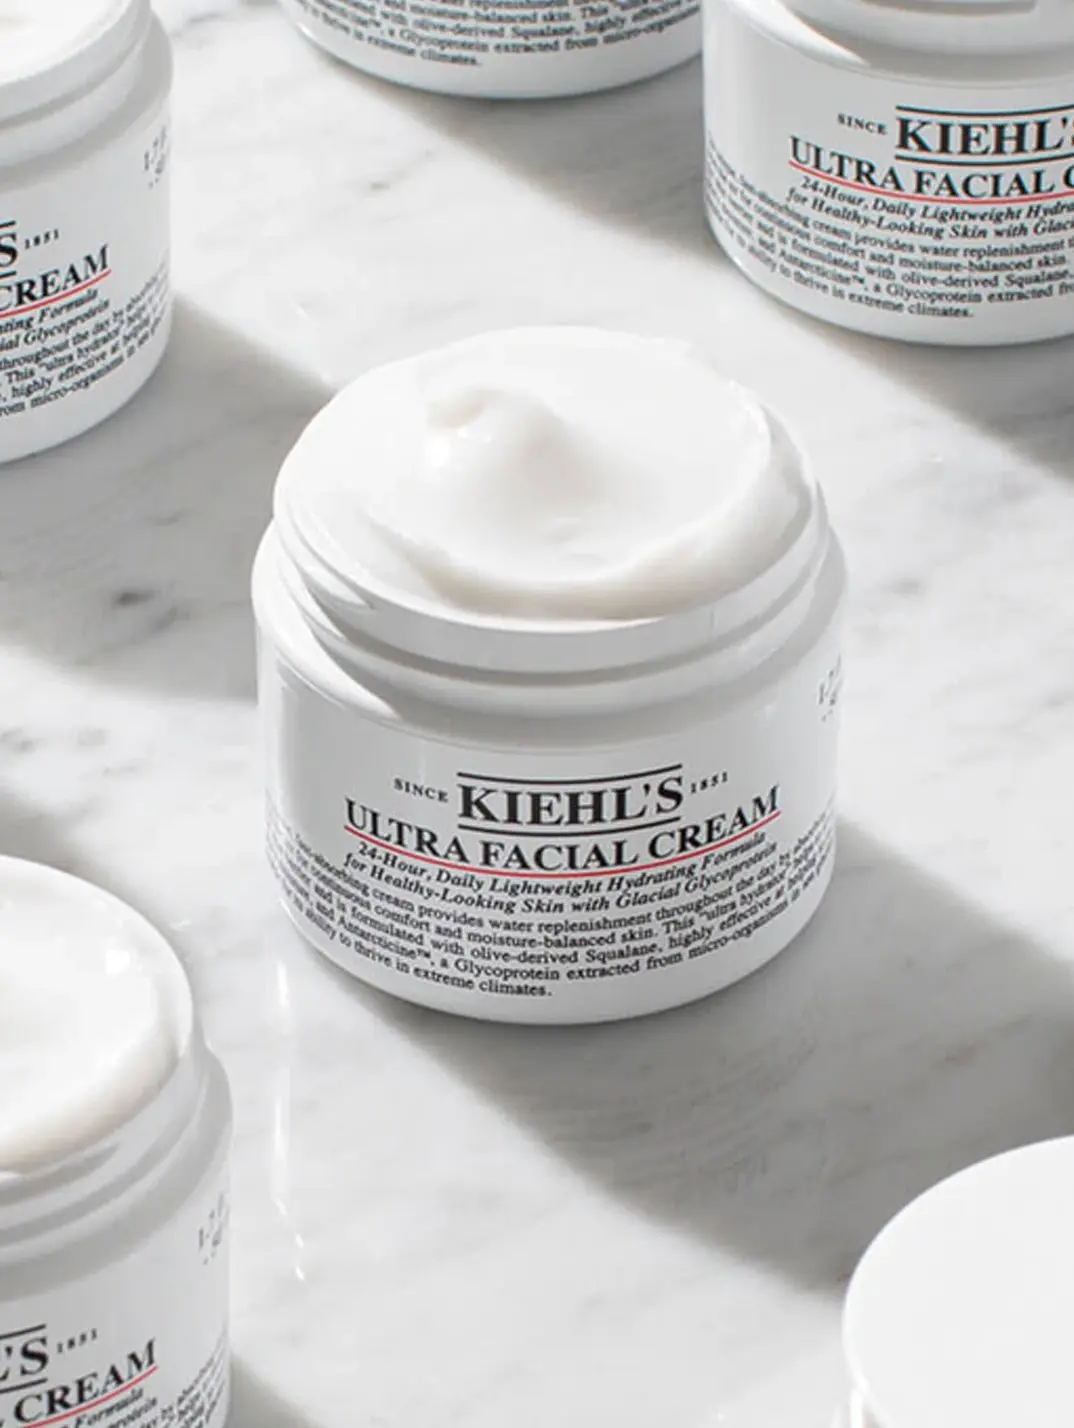 Ultra Facial Cream with Squalane, Face Cream